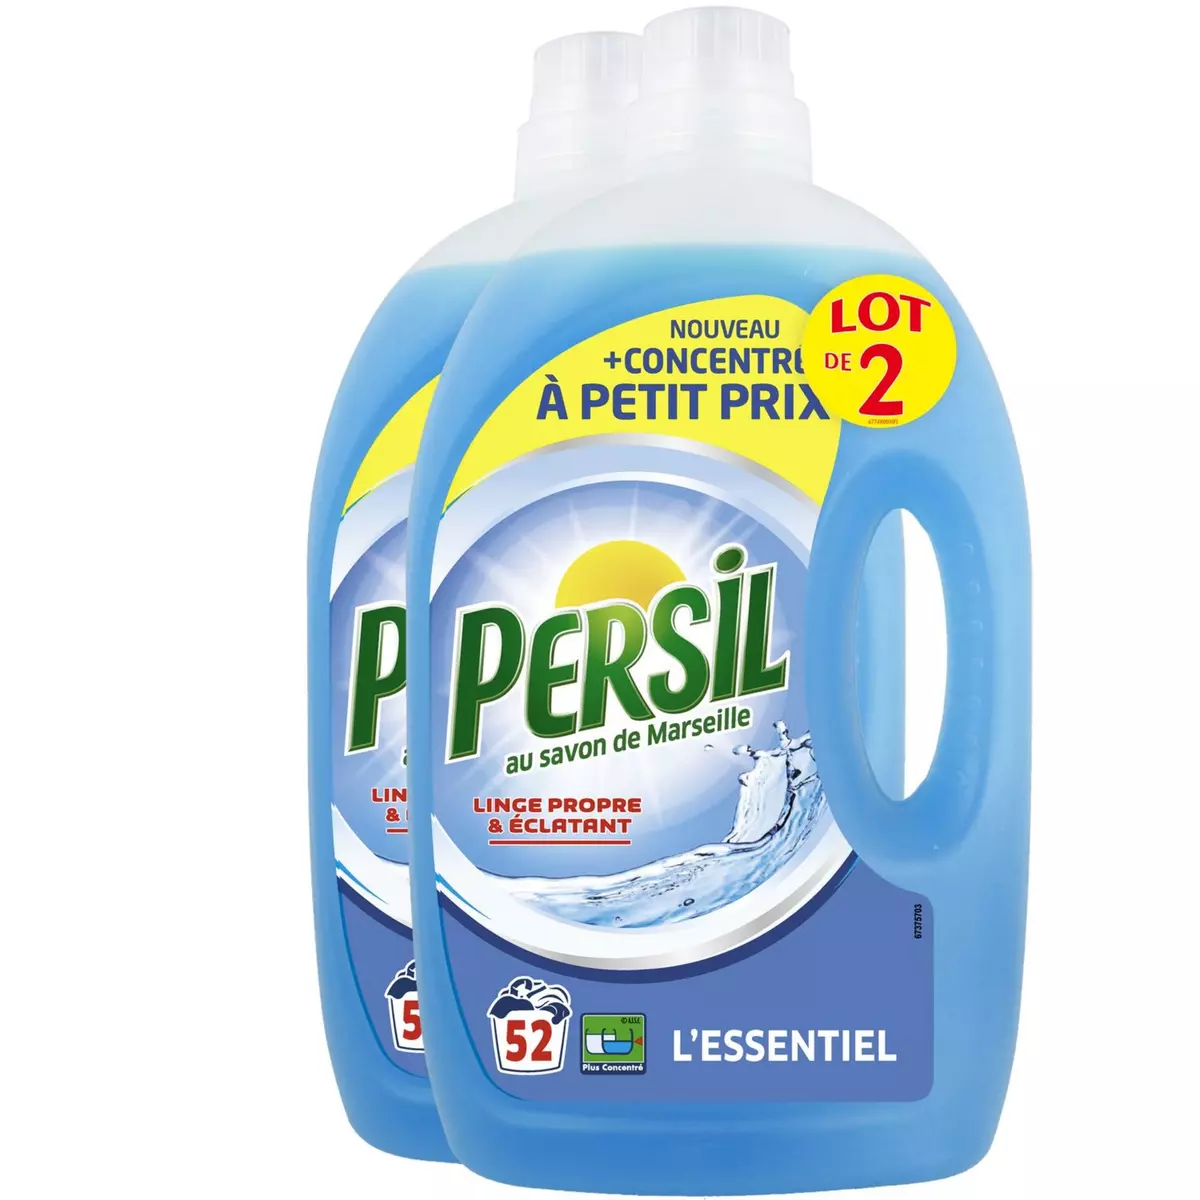 PERSIL Persil lessive diluée essentiel lavage x52 -2x2,6l